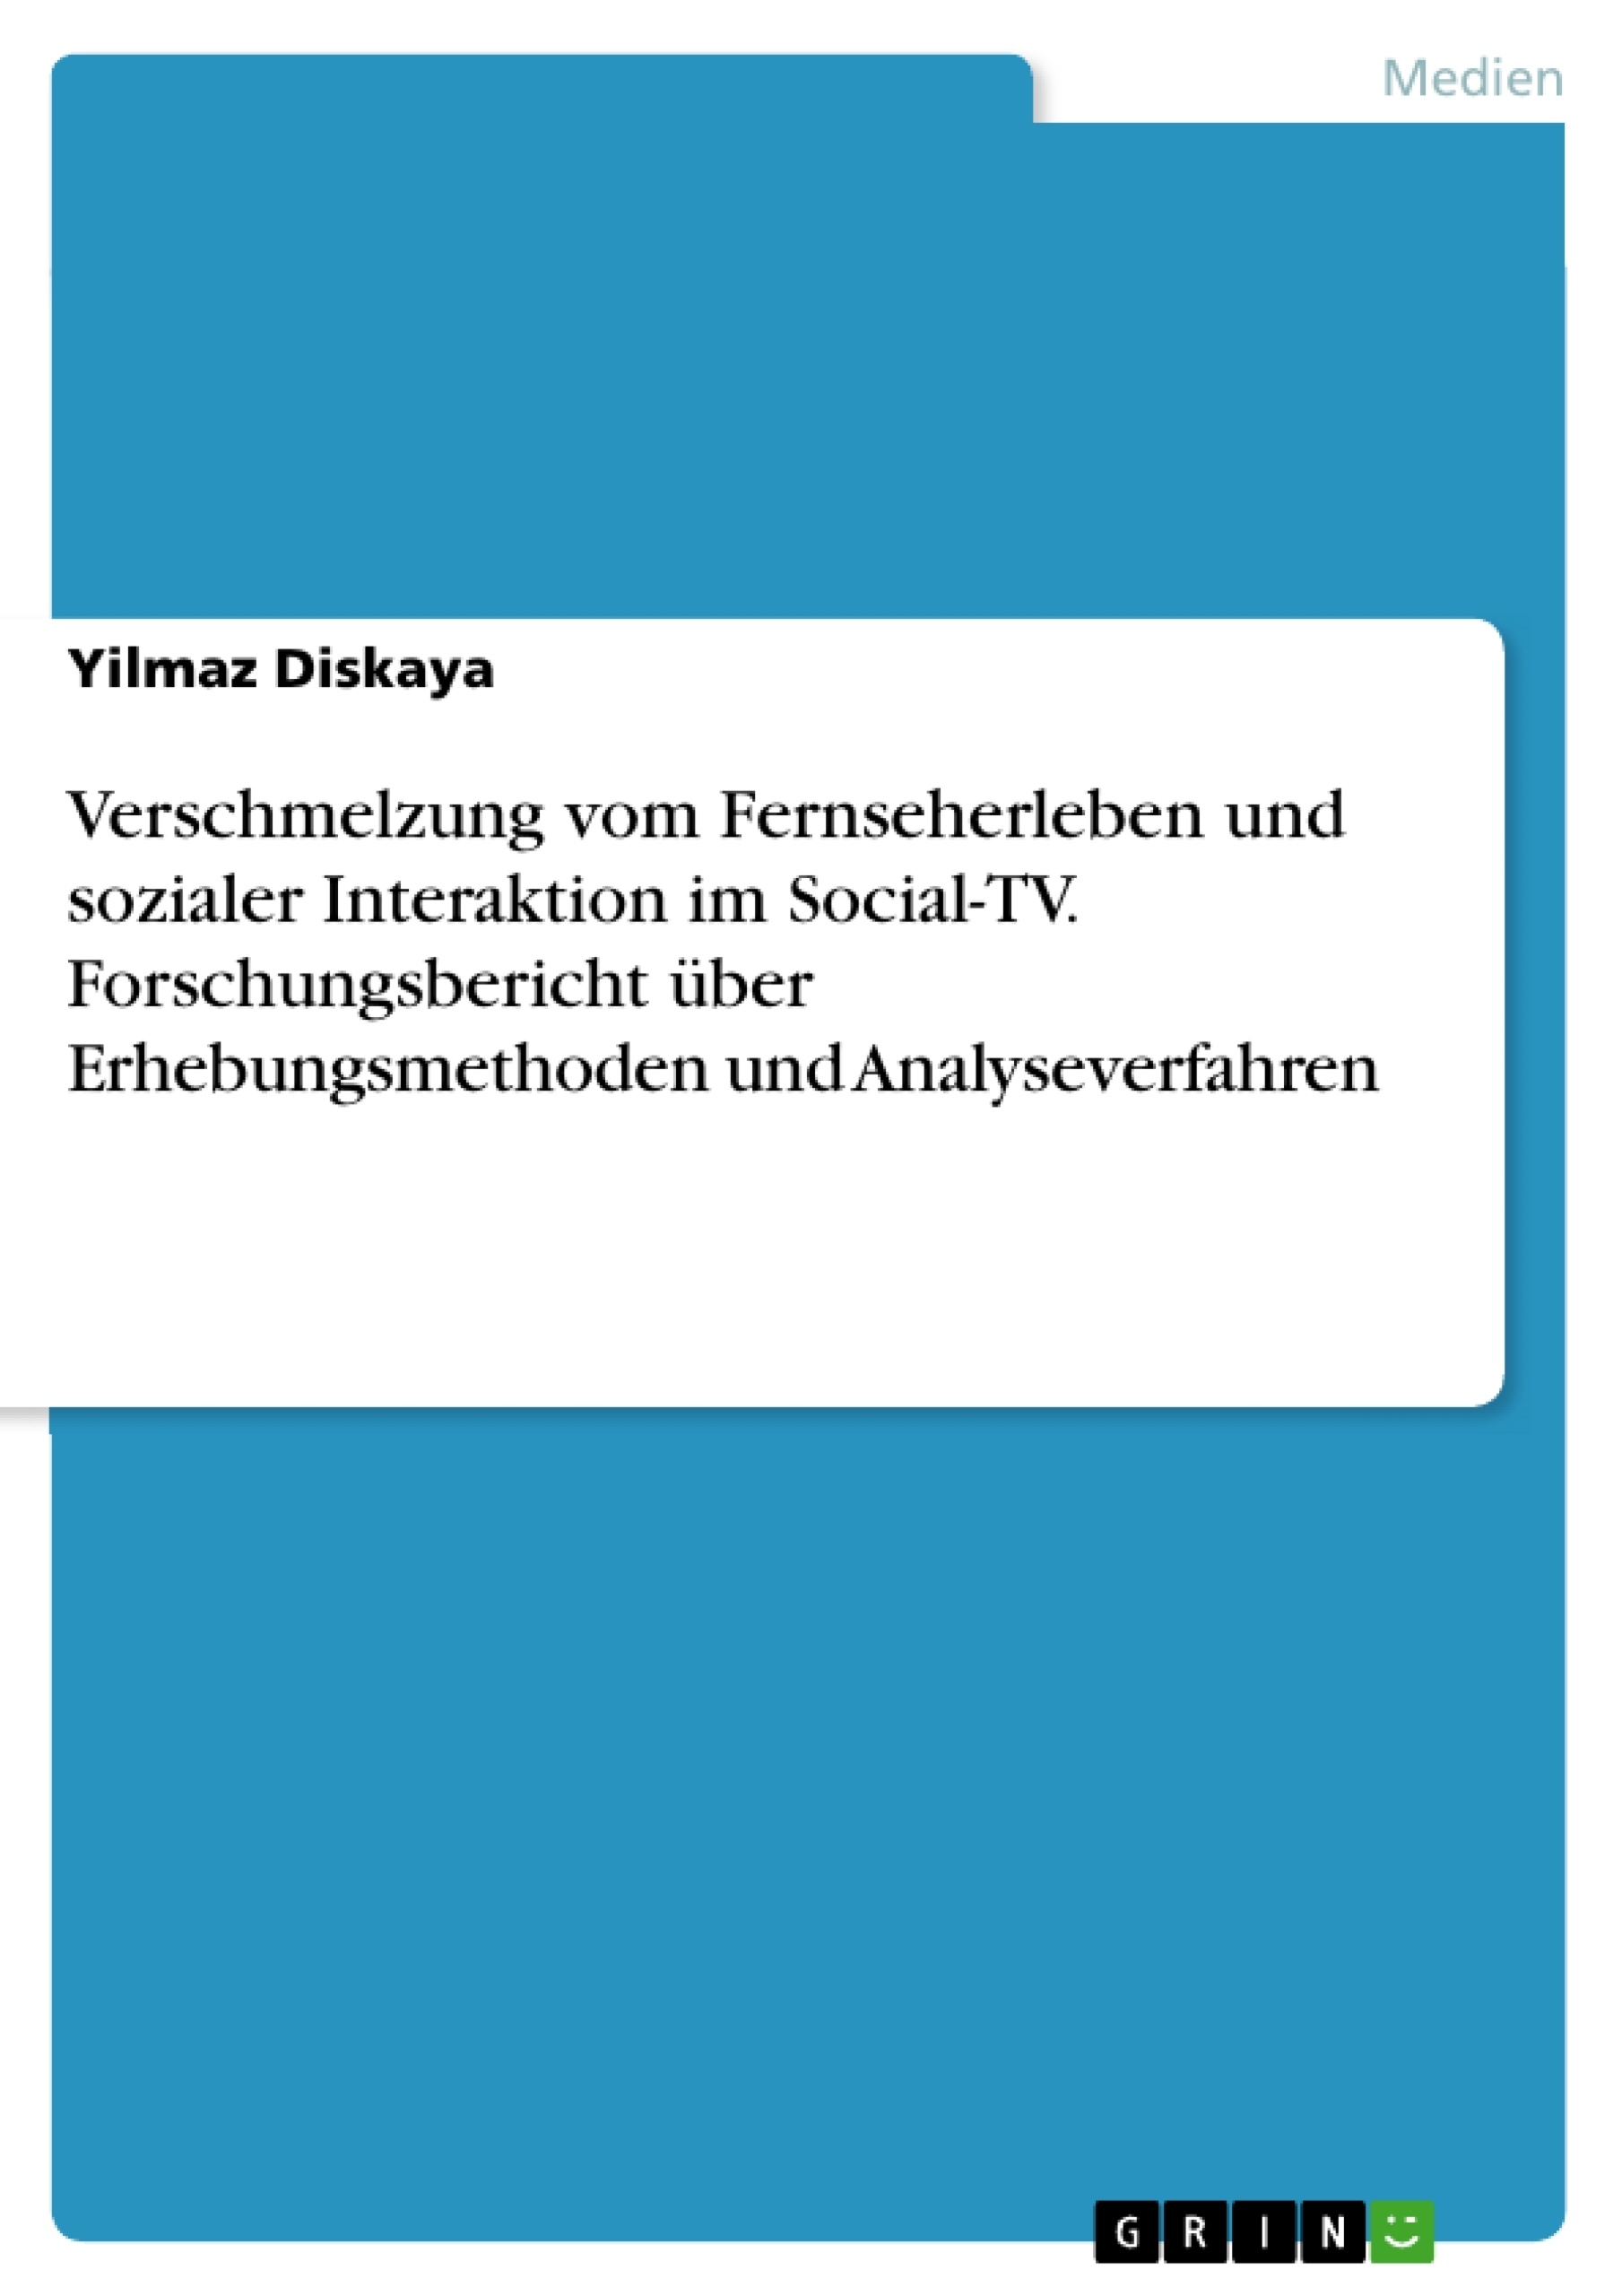 Title: Verschmelzung vom Fernseherleben und sozialer Interaktion im Social-TV. Forschungsbericht über Erhebungsmethoden und Analyseverfahren